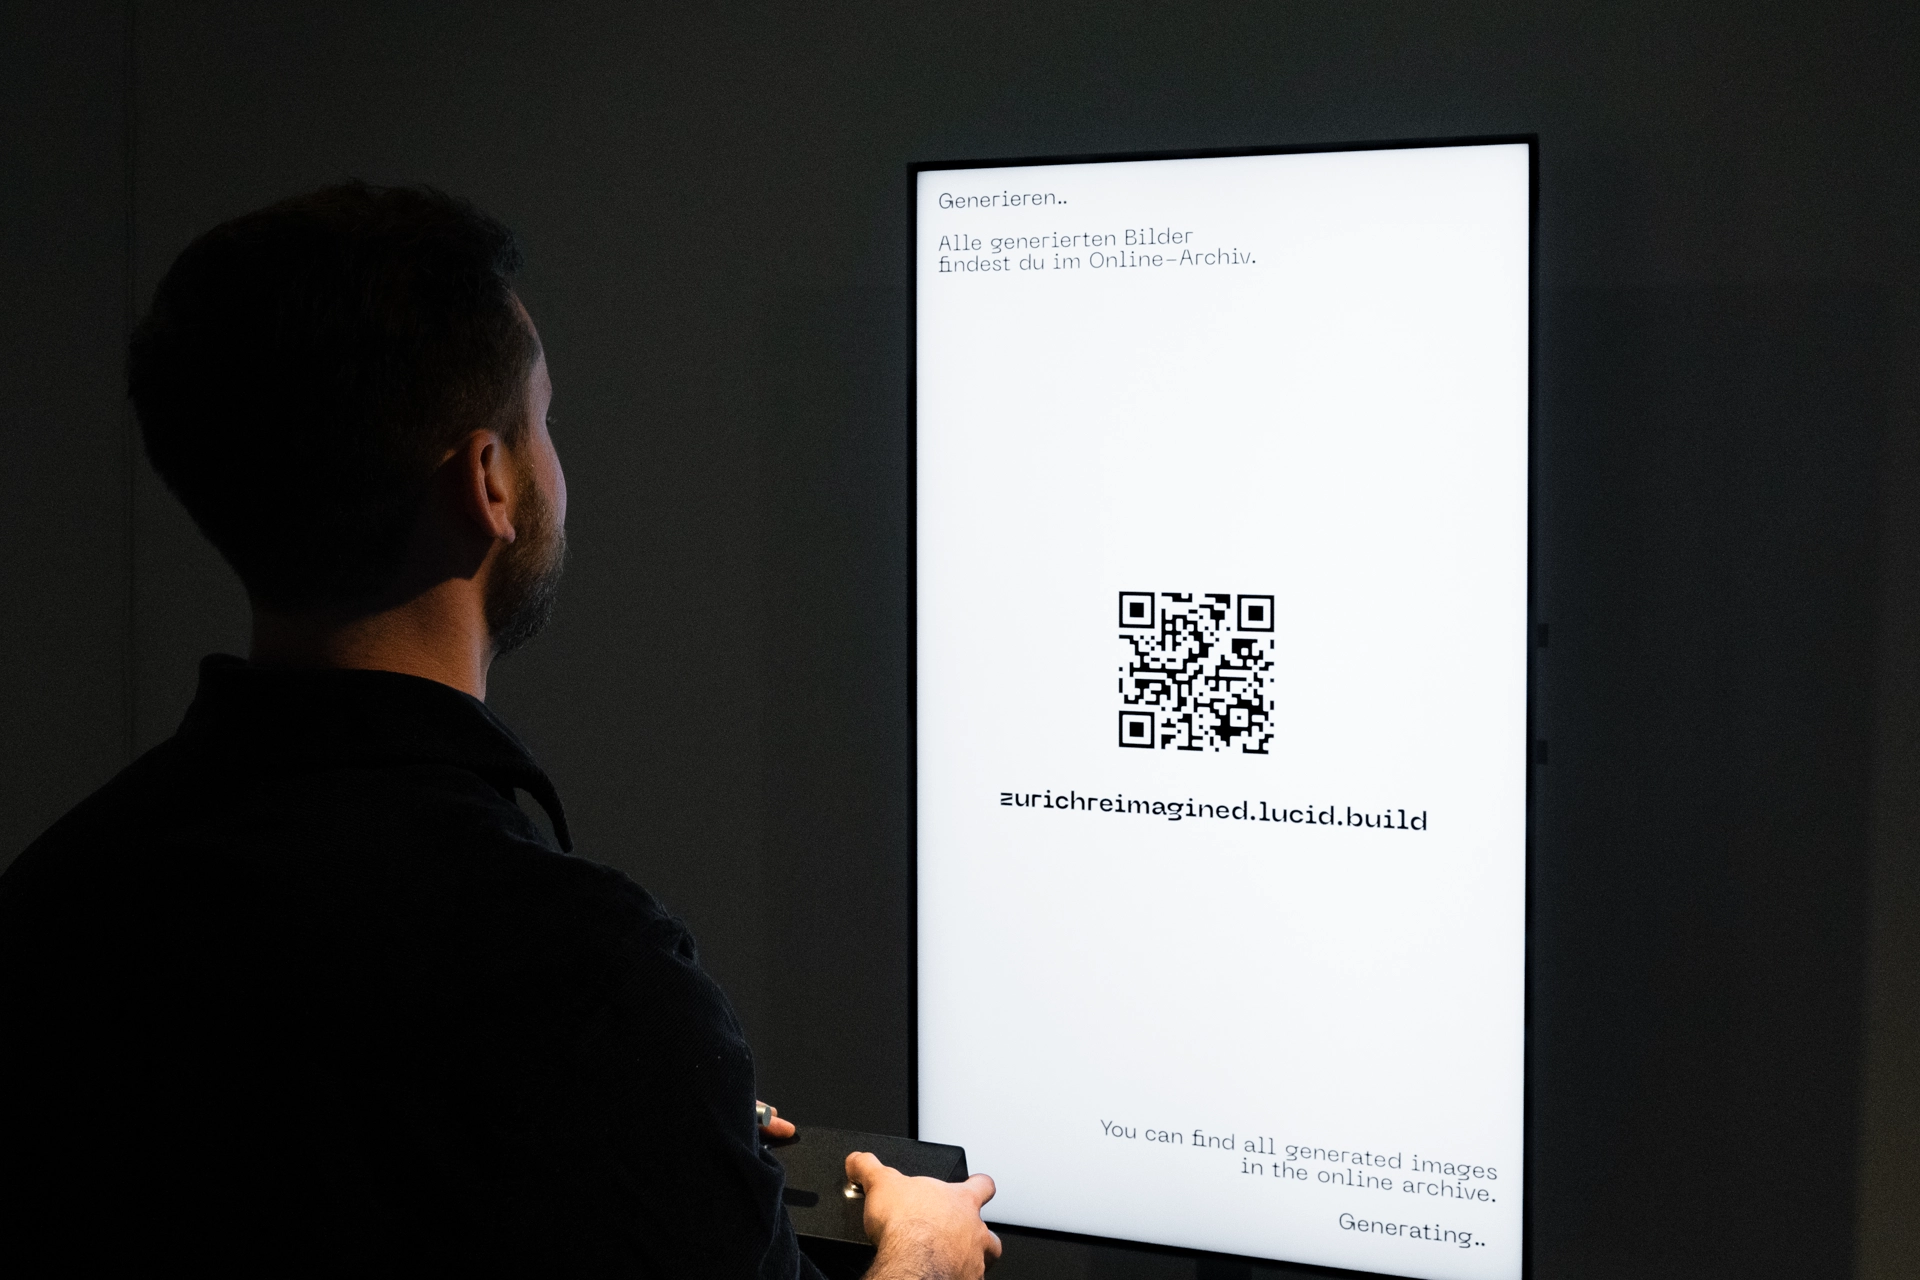 Ein Besucher wartet darauf, dass sein Bild generiert wird. Er steht vor dem grossen Bildschirm mit den Händen auf der Interaktionsbox.